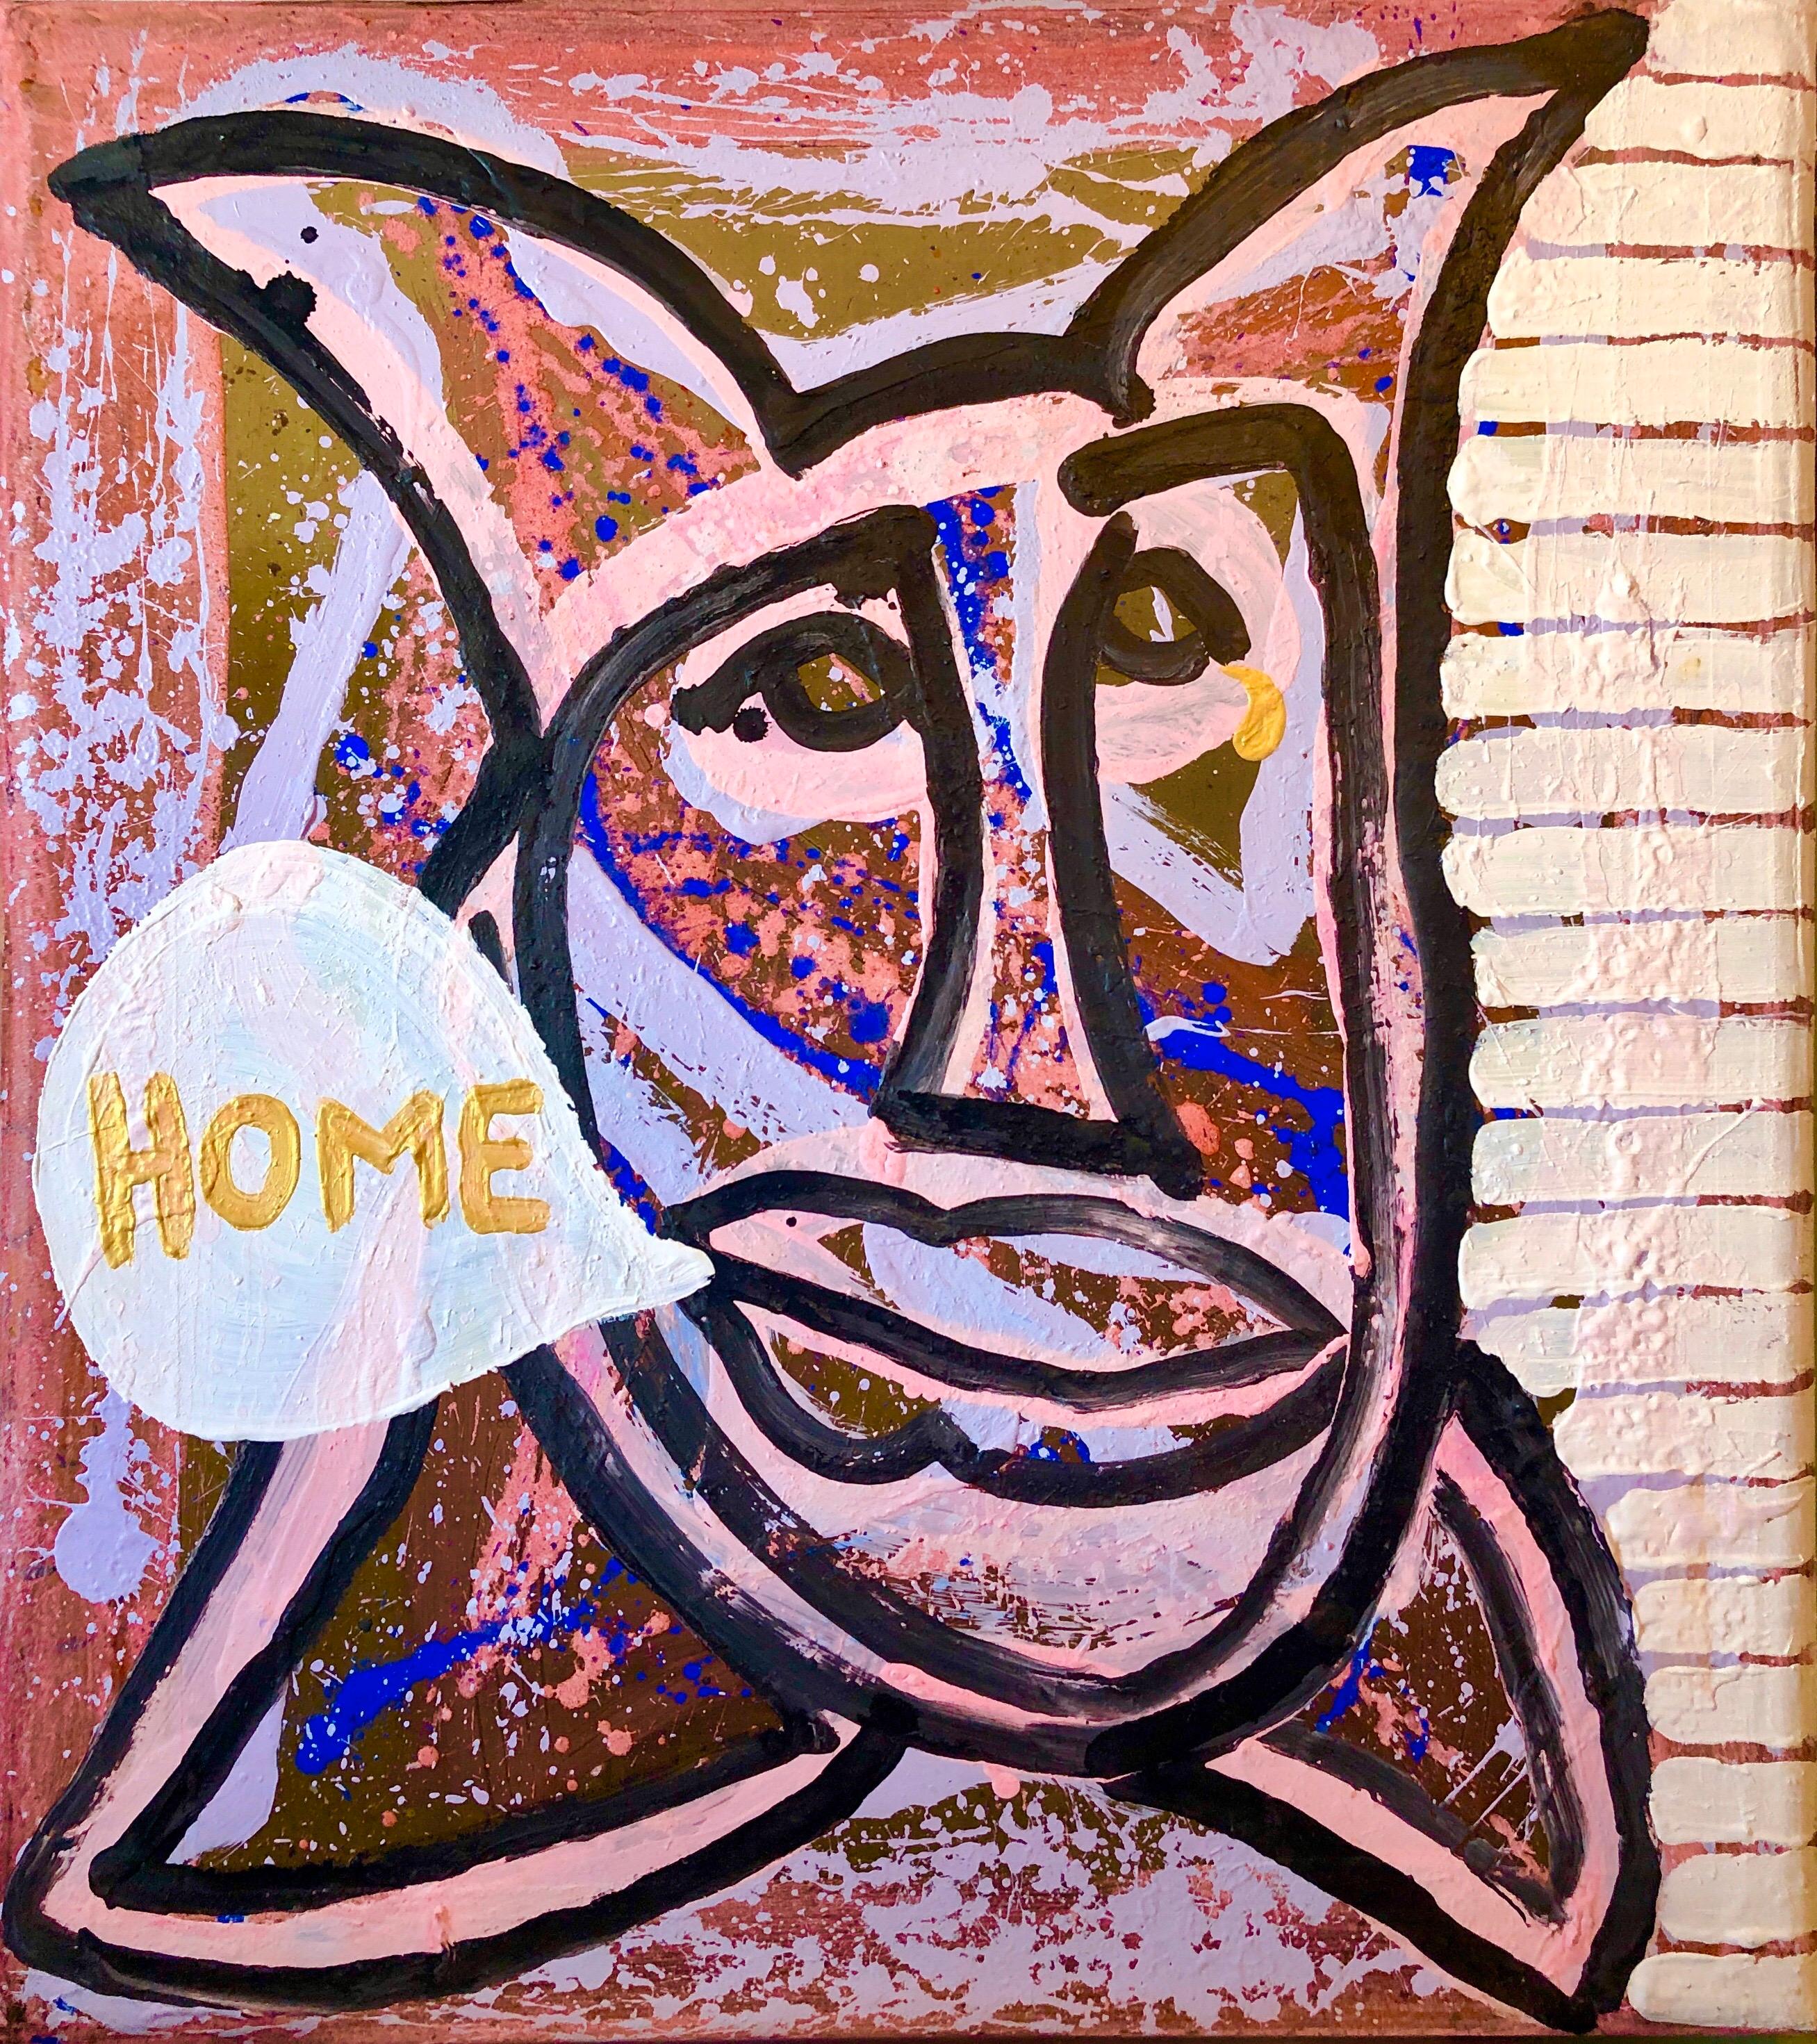 Peinture technique mixte Pop Art conceptuelle en couleur « Home » de la galerie Brooke Alexander